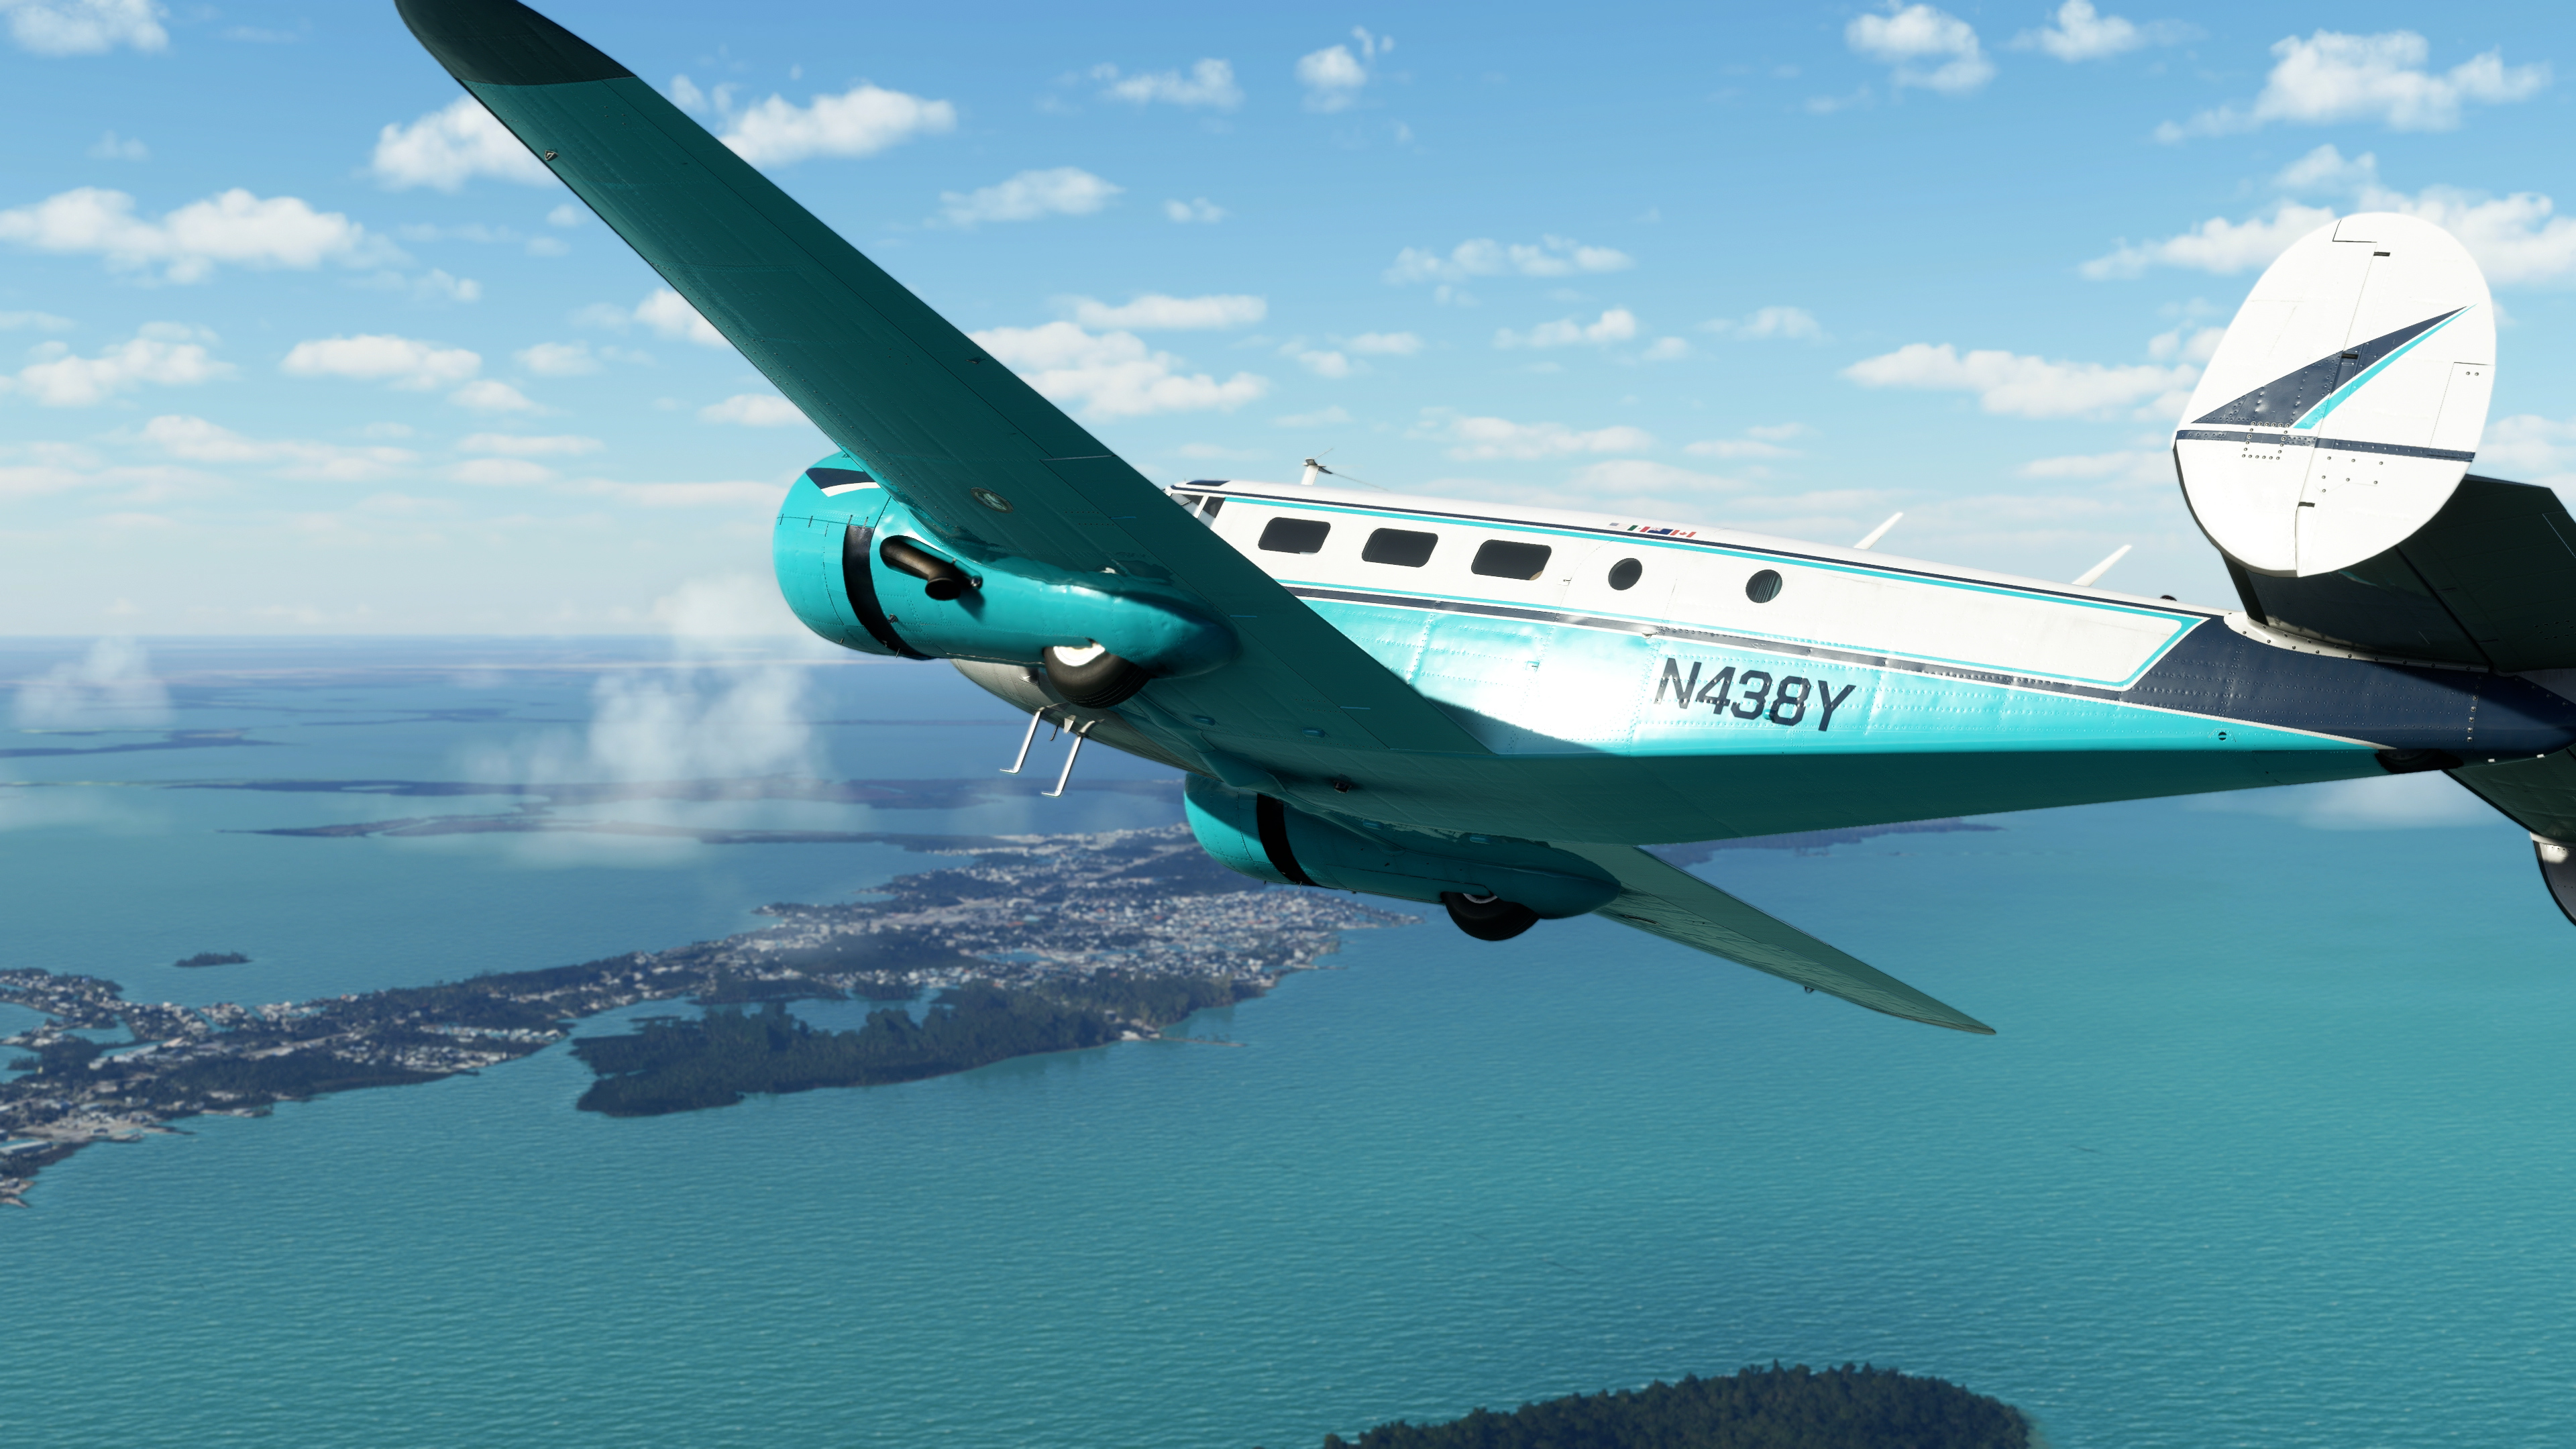 Microsoft Flight Simulator - Local Legends 5 - Tangkapan layar Beechcraft Model 18